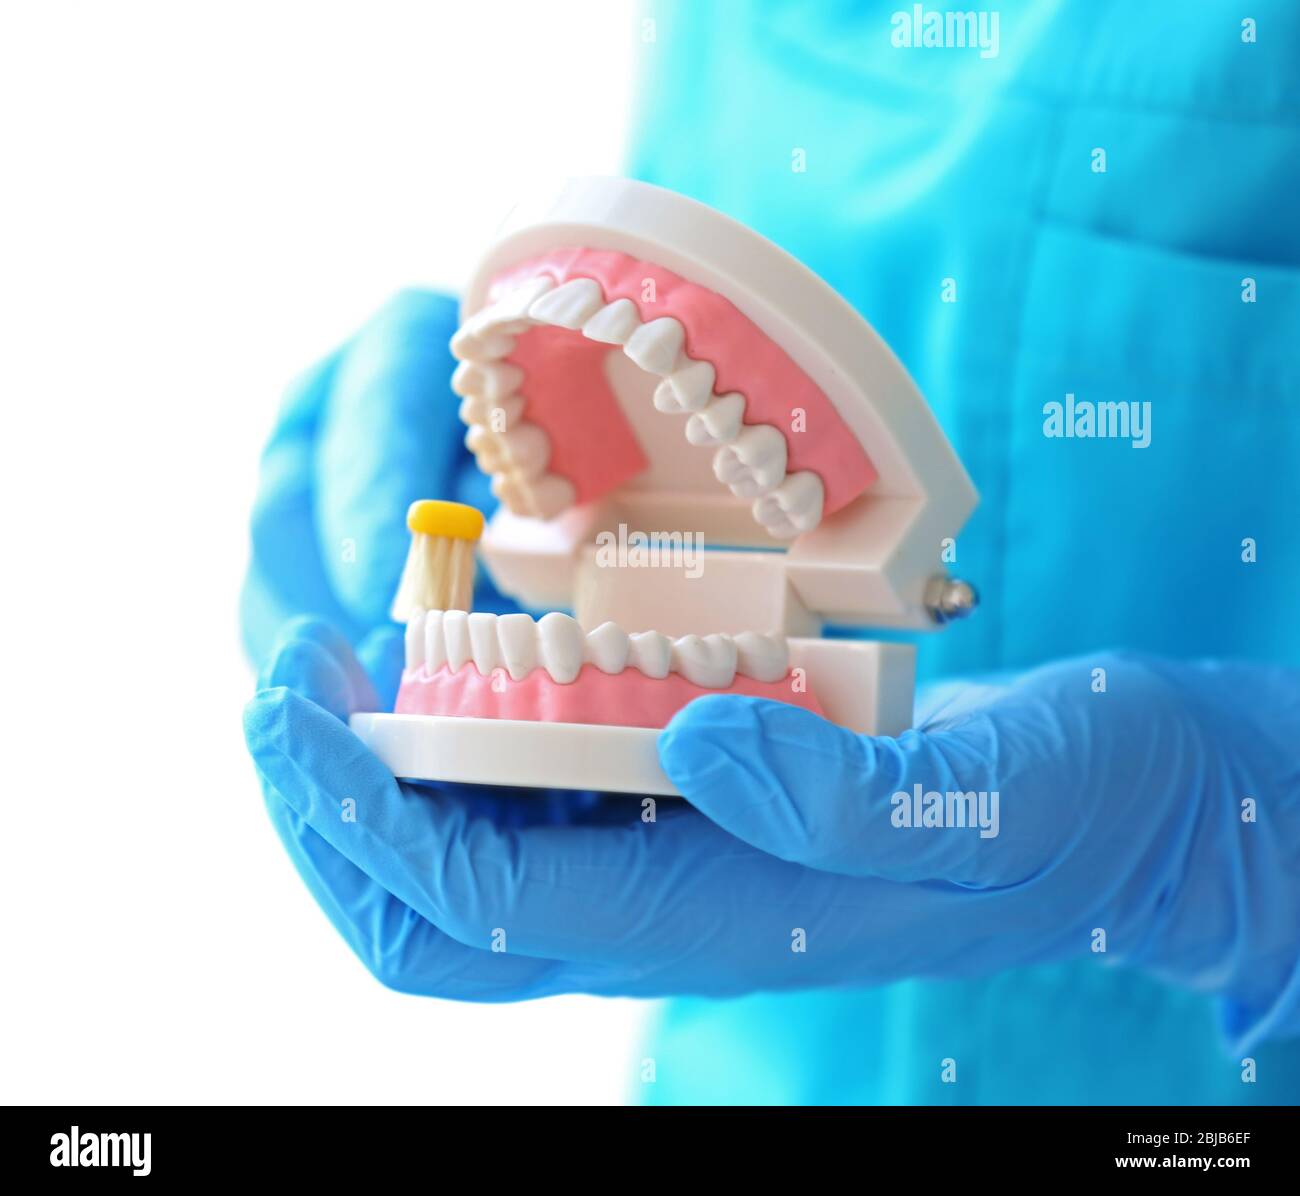 Dentista femenino limpiando el modelo de mandíbula dental con cepillo de dientes Foto de stock